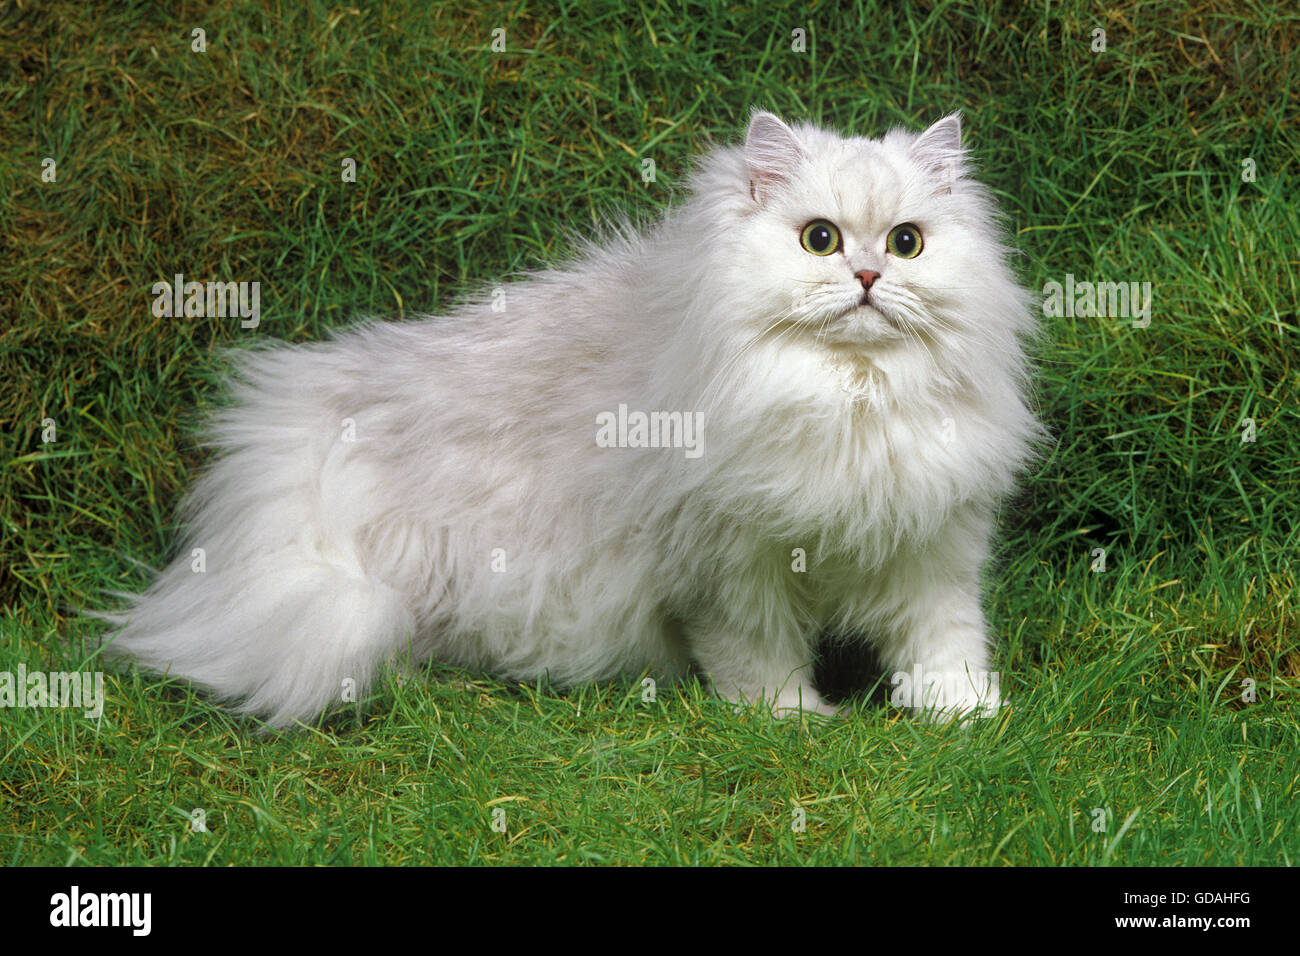 Chinchilla Persian Domestic Cat on Grass Stock Photo